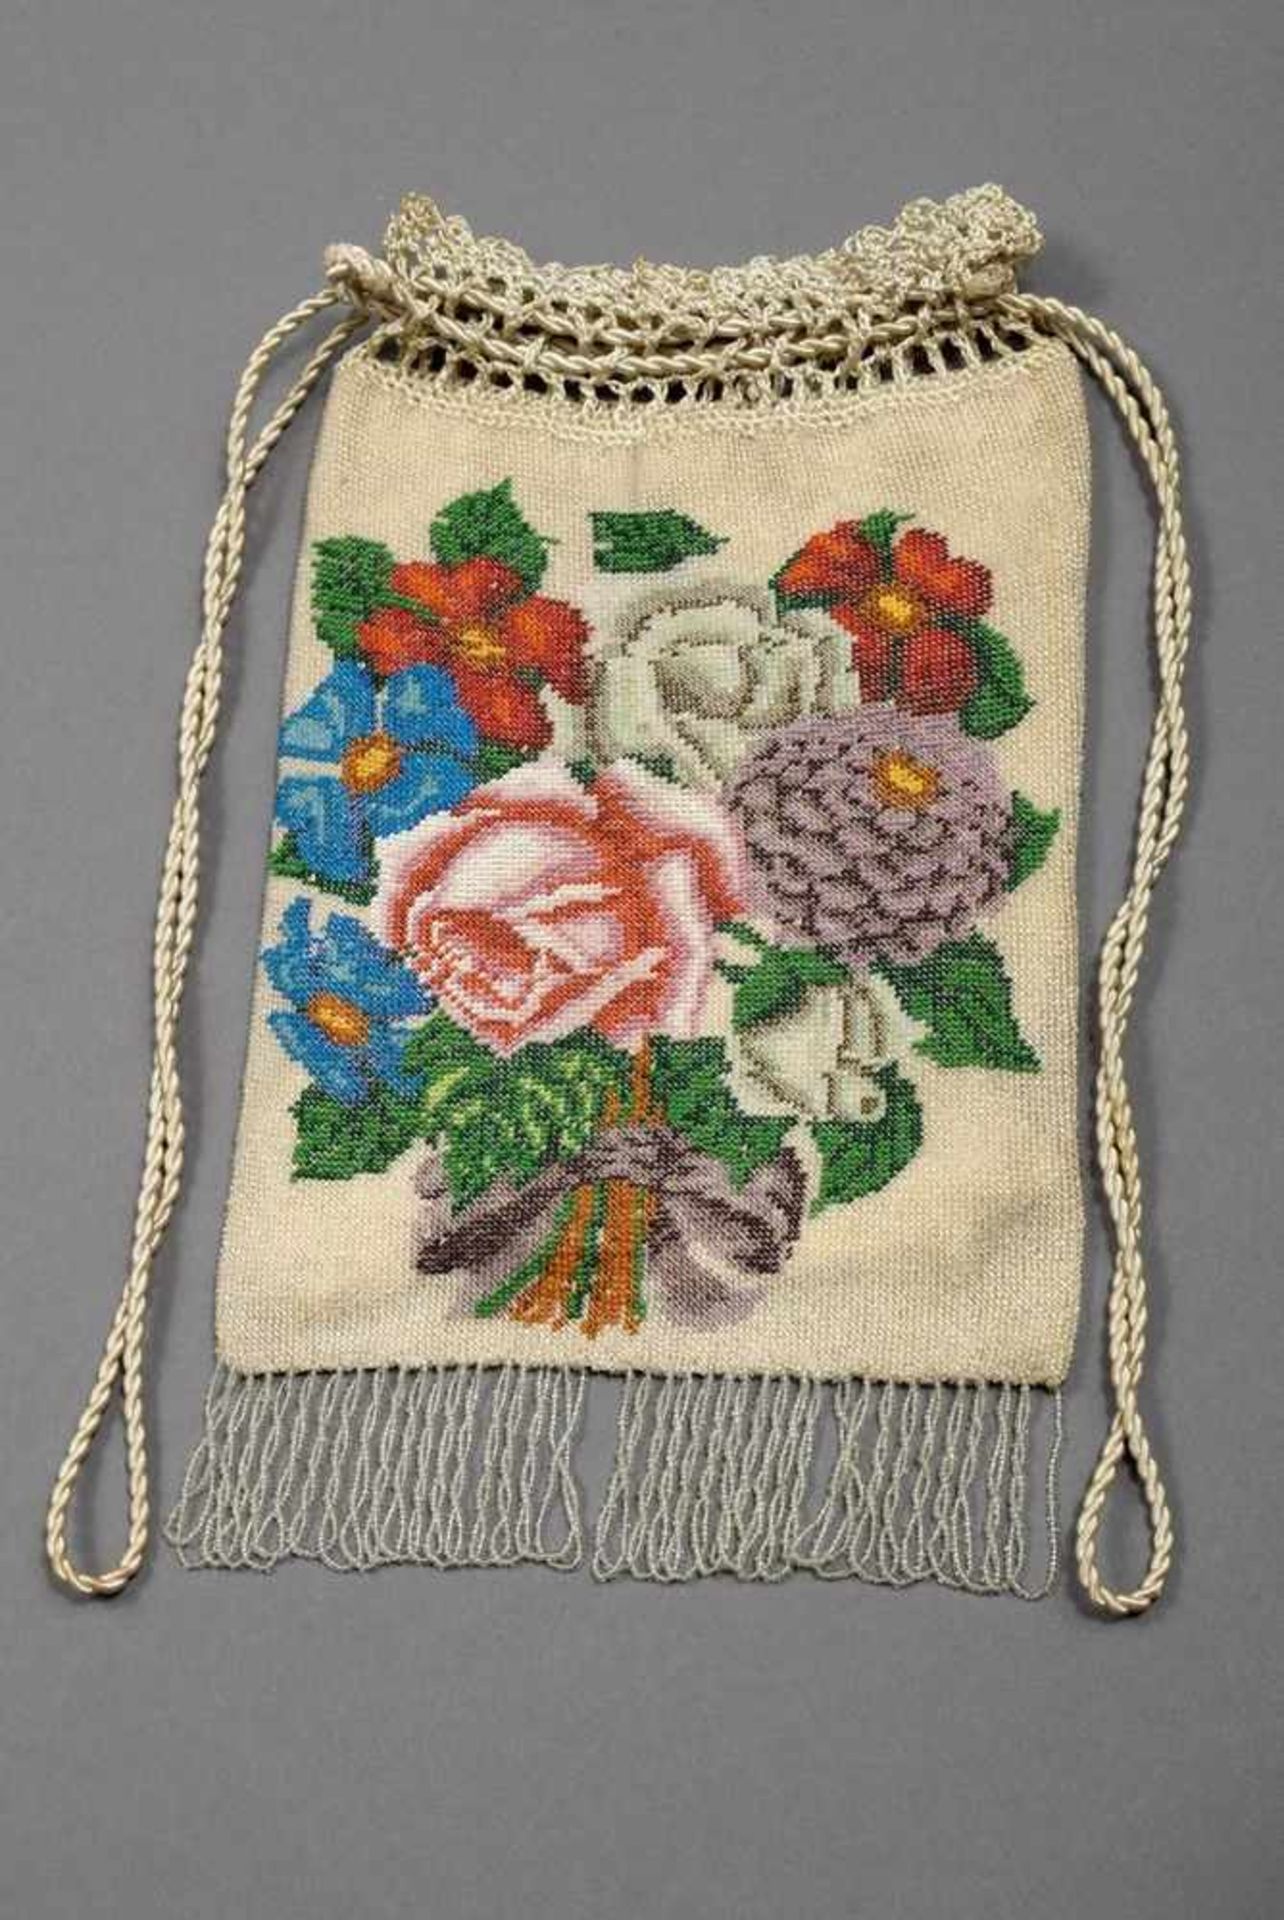 Beige Biedermeier pearl bag with floral decoration "flower bouquet", 26x15,5cm, small defects,